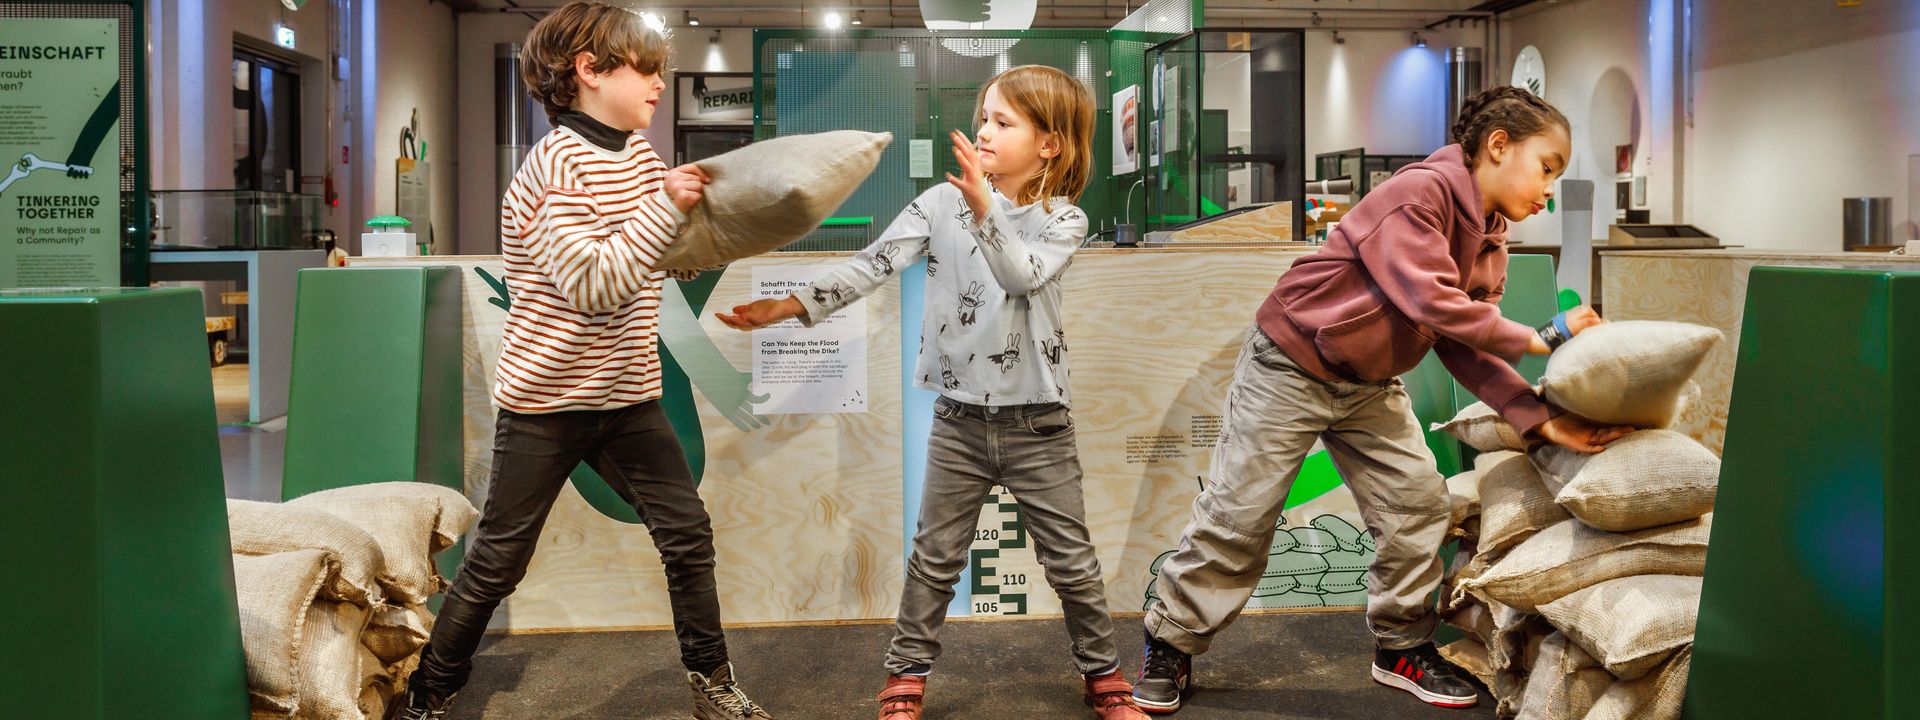 Drei Kinder reparieren in einer Ausstellungshalle einen Spielzeug-Deich aus Sandsäcken. Sie bilden eine Kette und reichen sich die Säcke, um eine Lücke im Deich zu flicken.